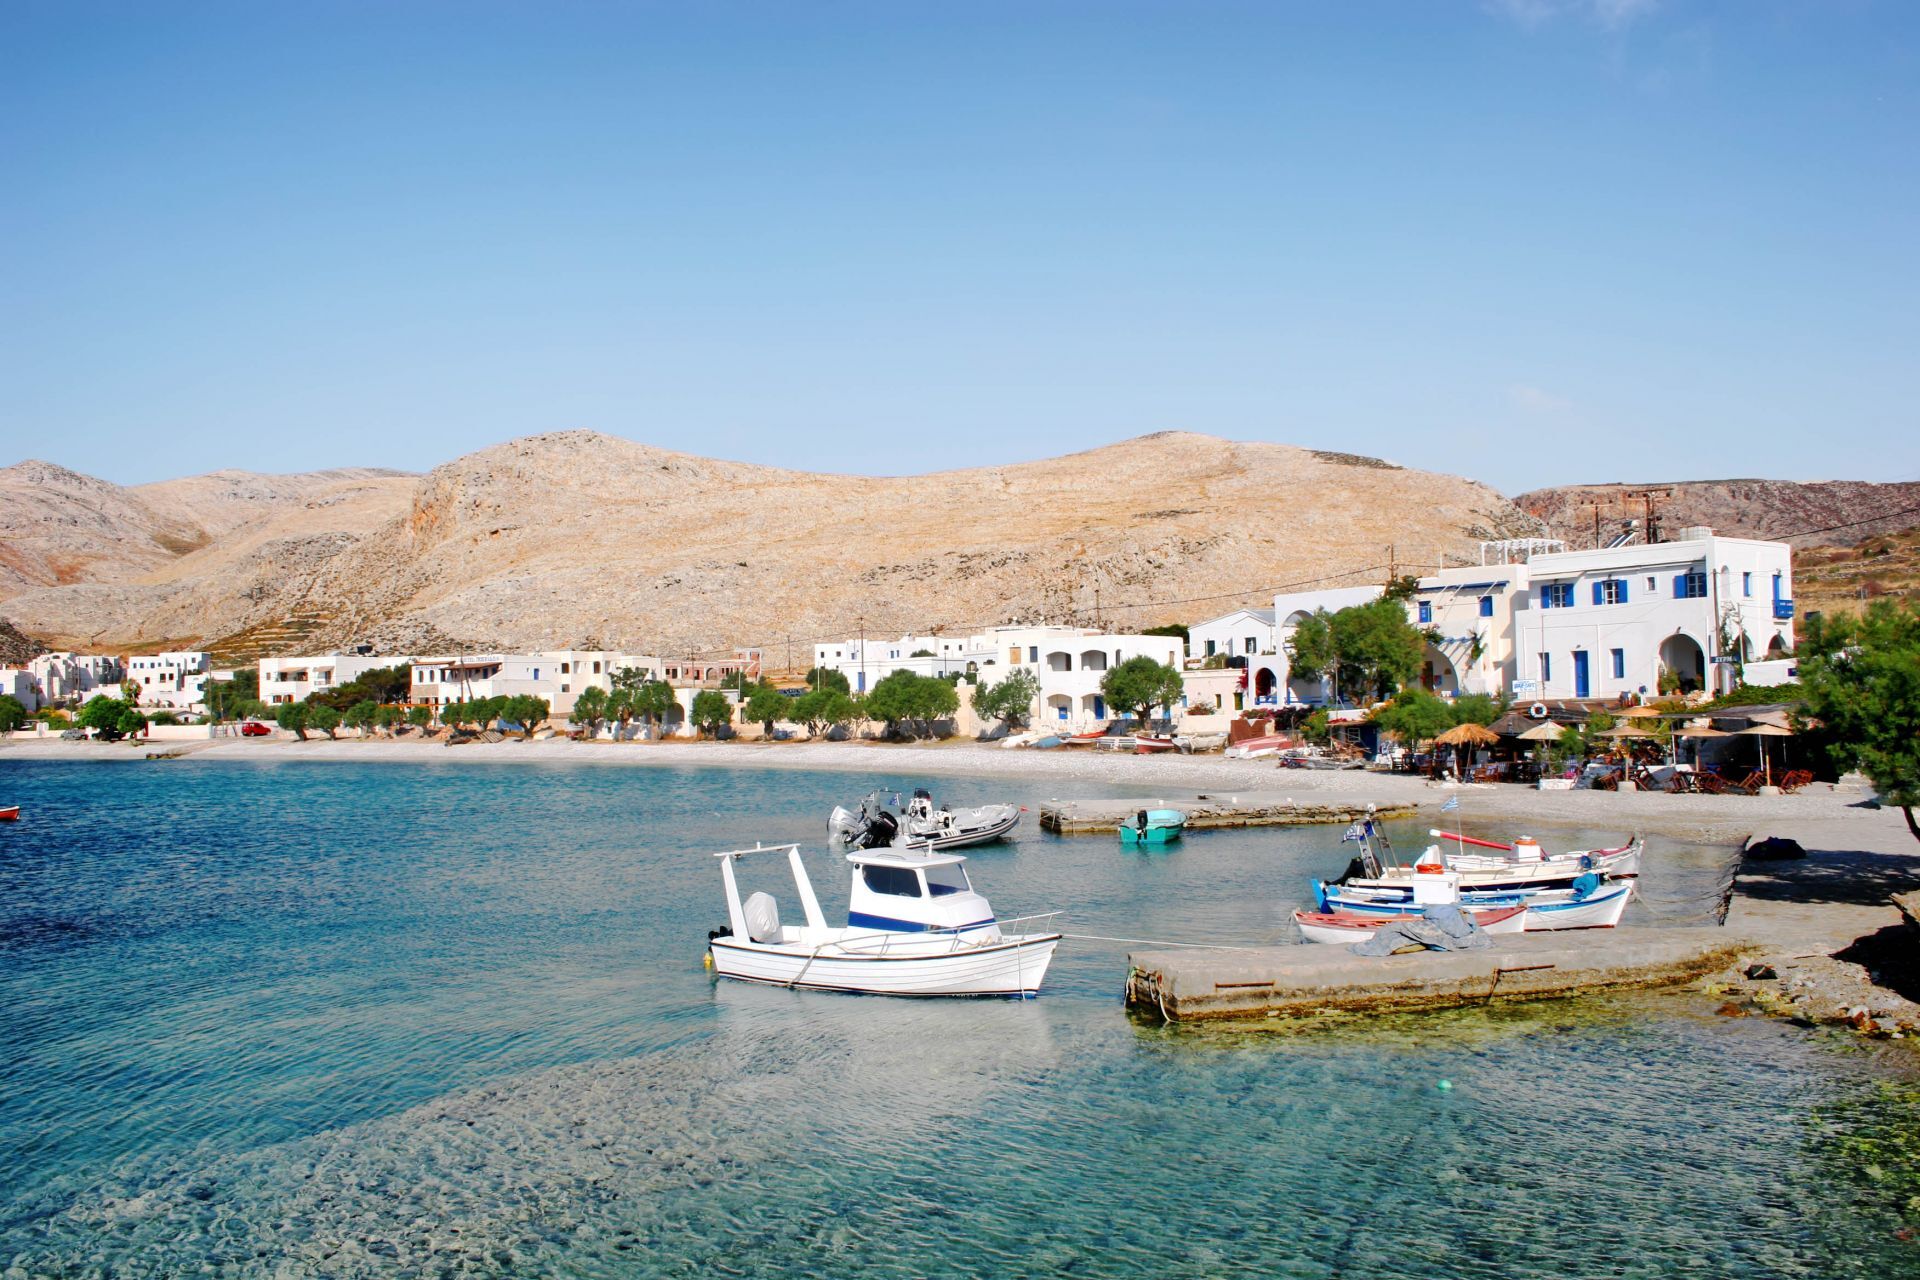 Seaside hotels in the area of Karavostasi in Folegandros